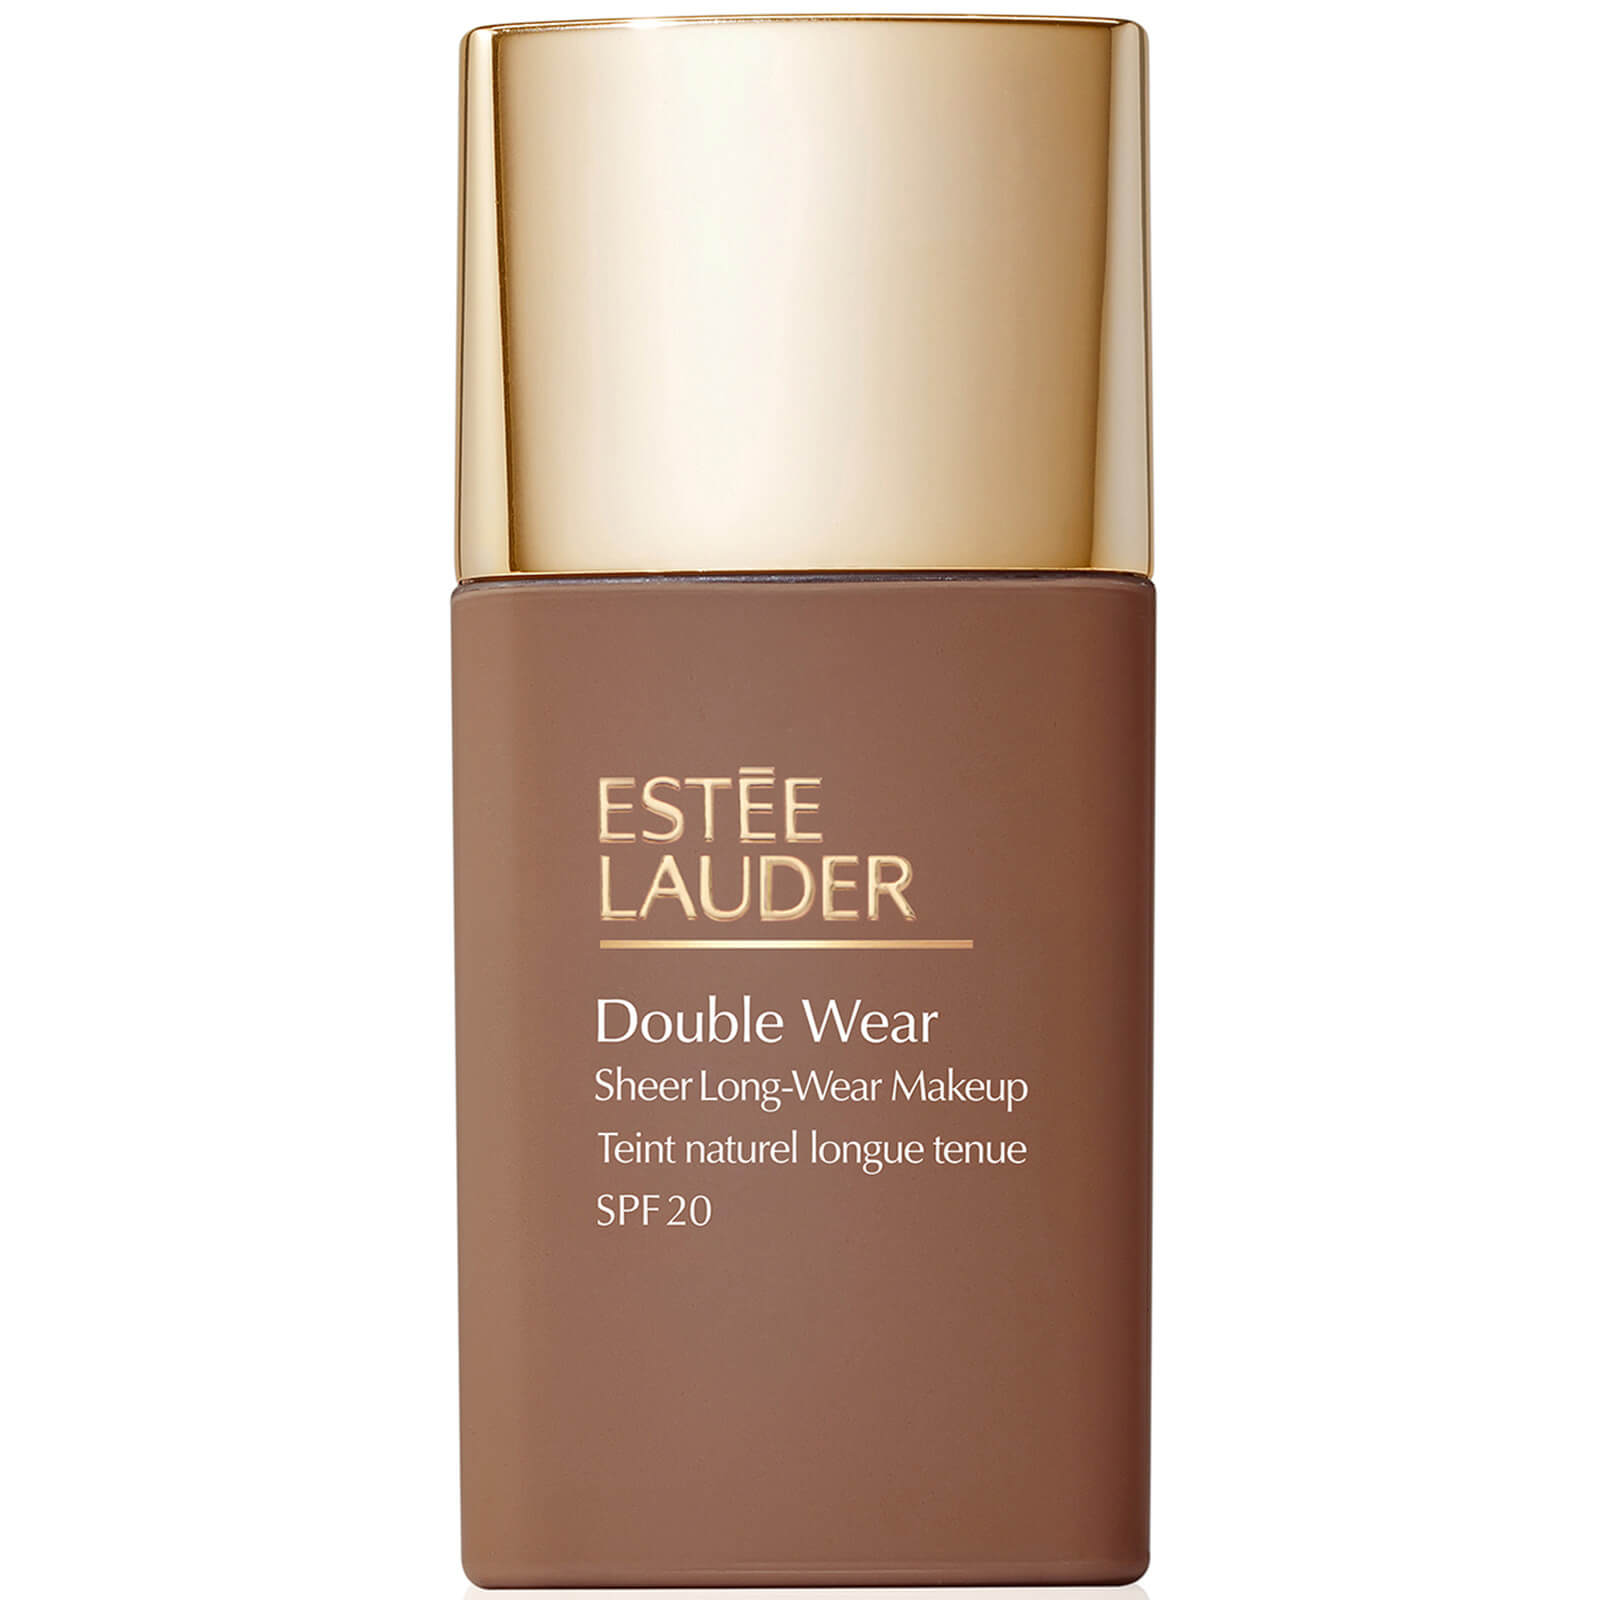 Estee Lauder Double Wear Sheer Long-Wear Makeup SPF 20 30ml (Various Shades) - 7N1 Deep Amber